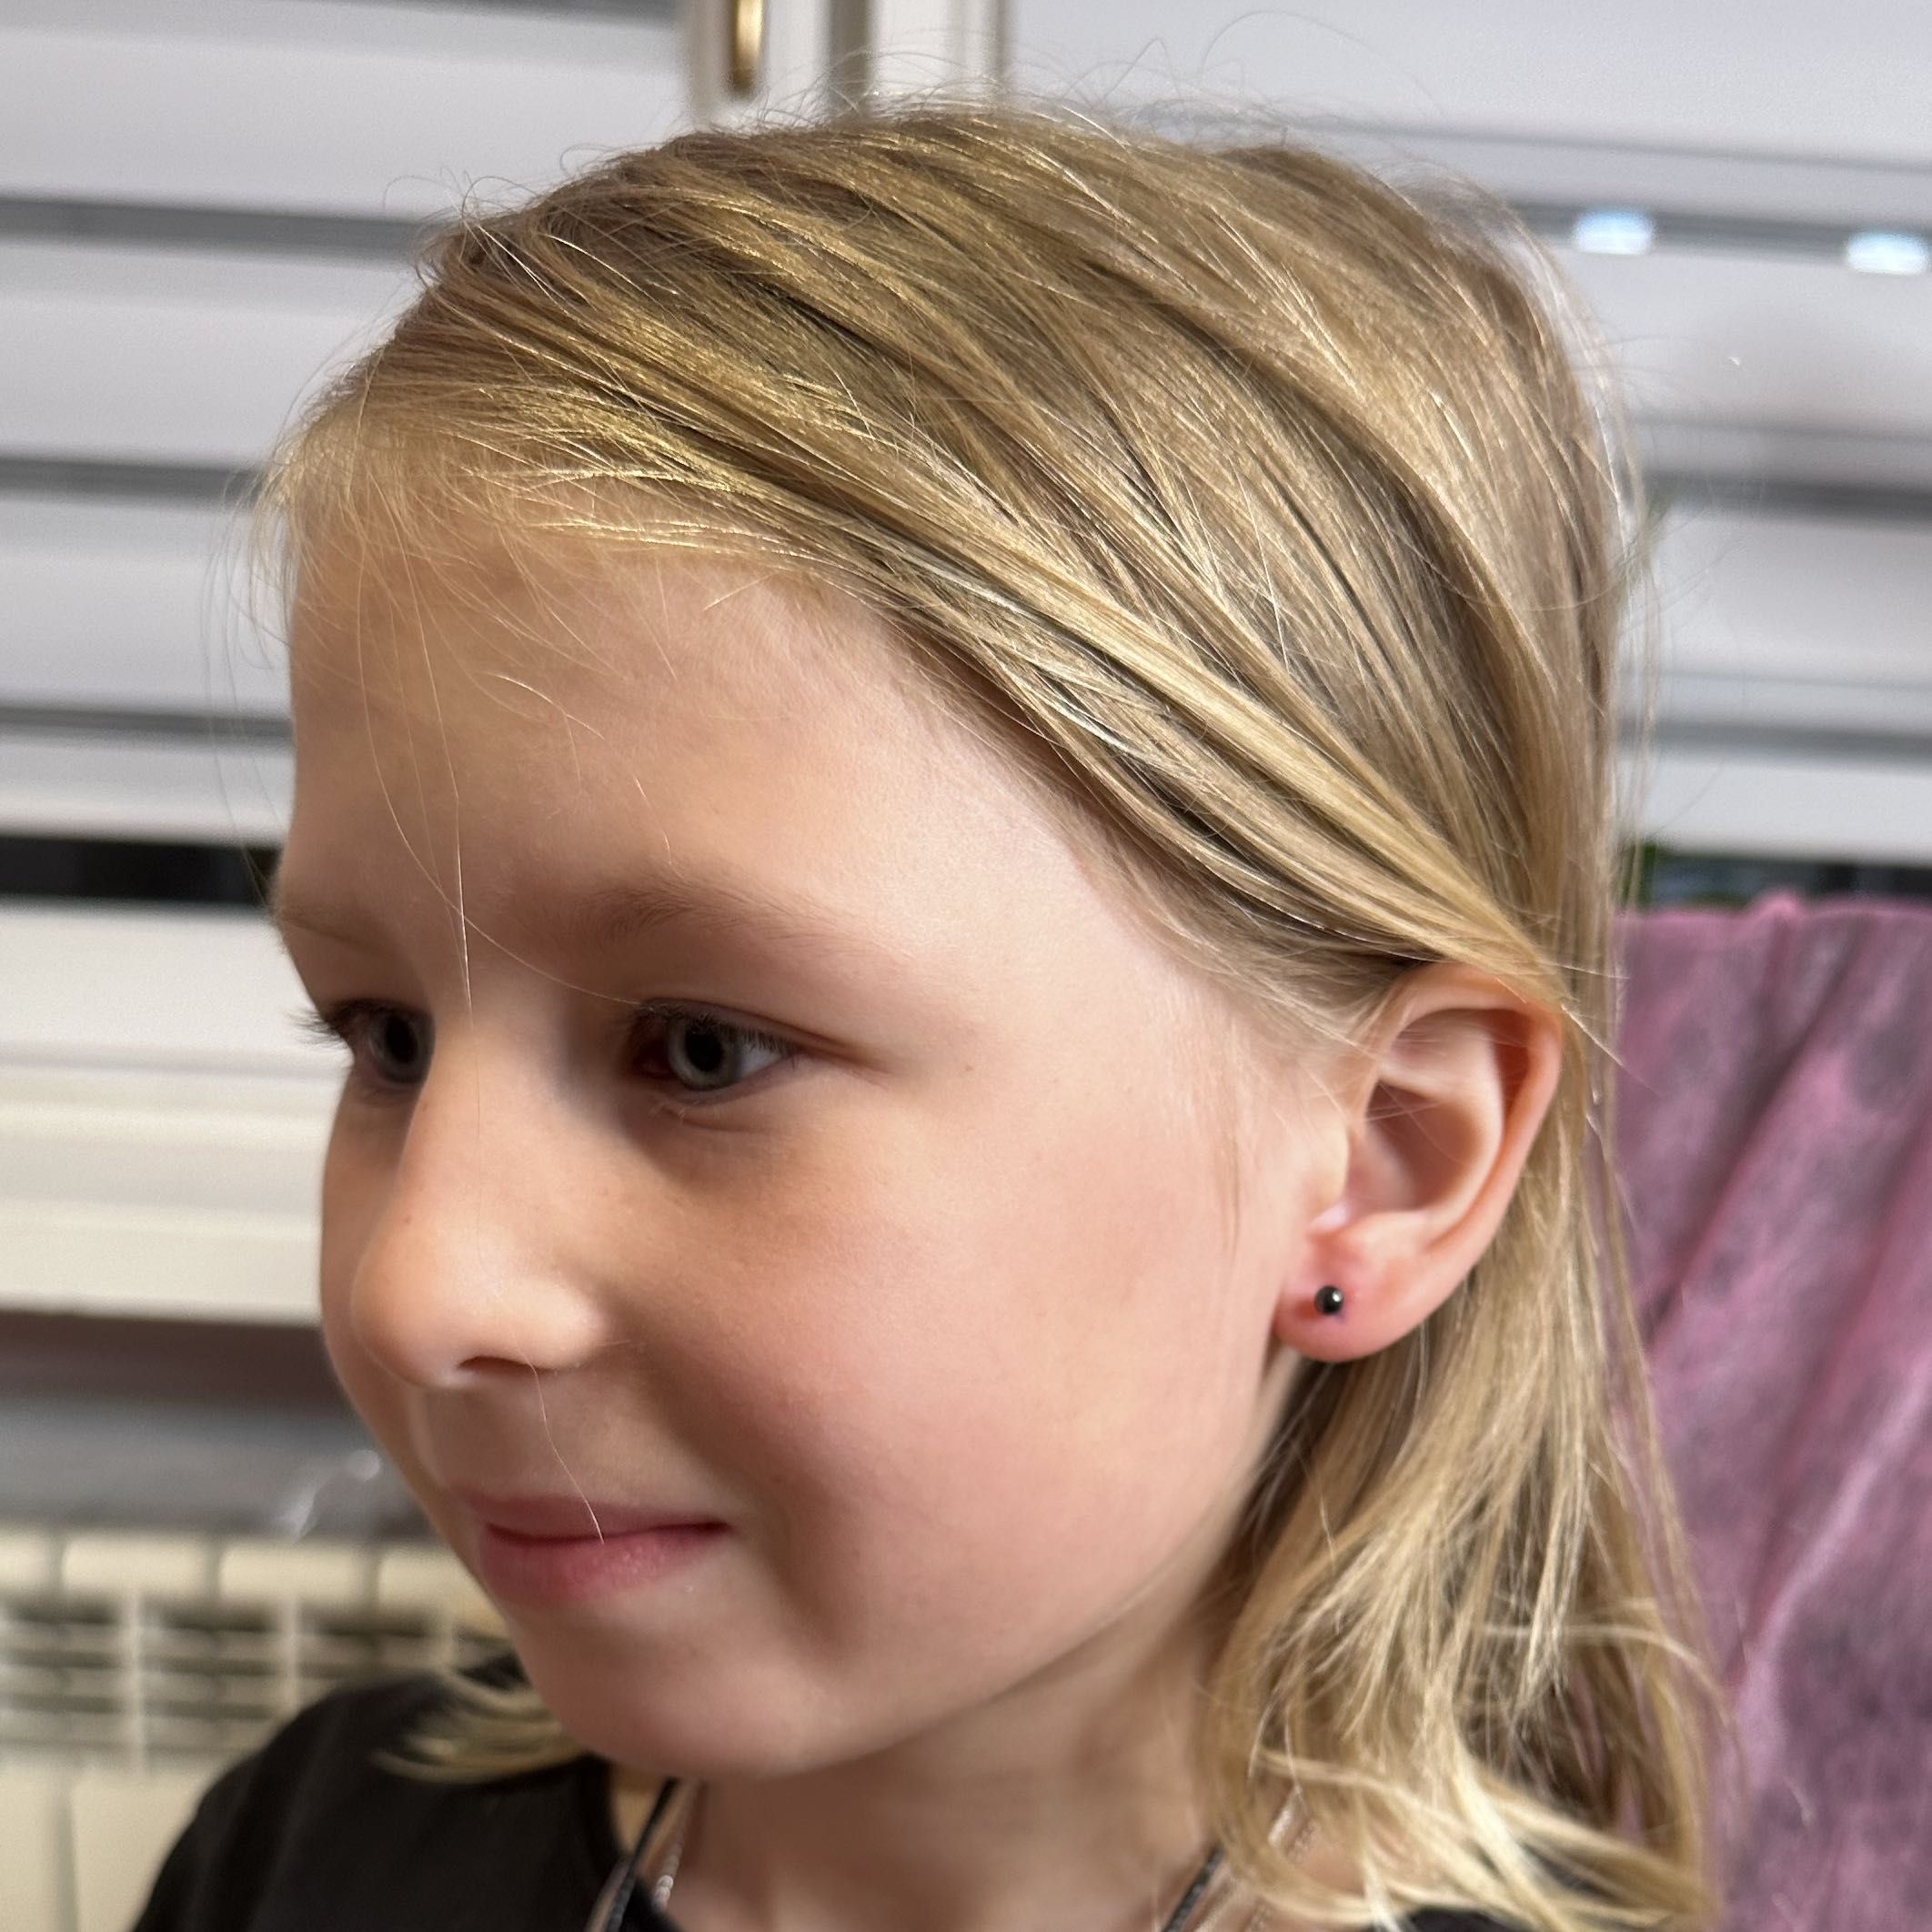 Portfolio usługi Przekłuwanie uszu dzieciom